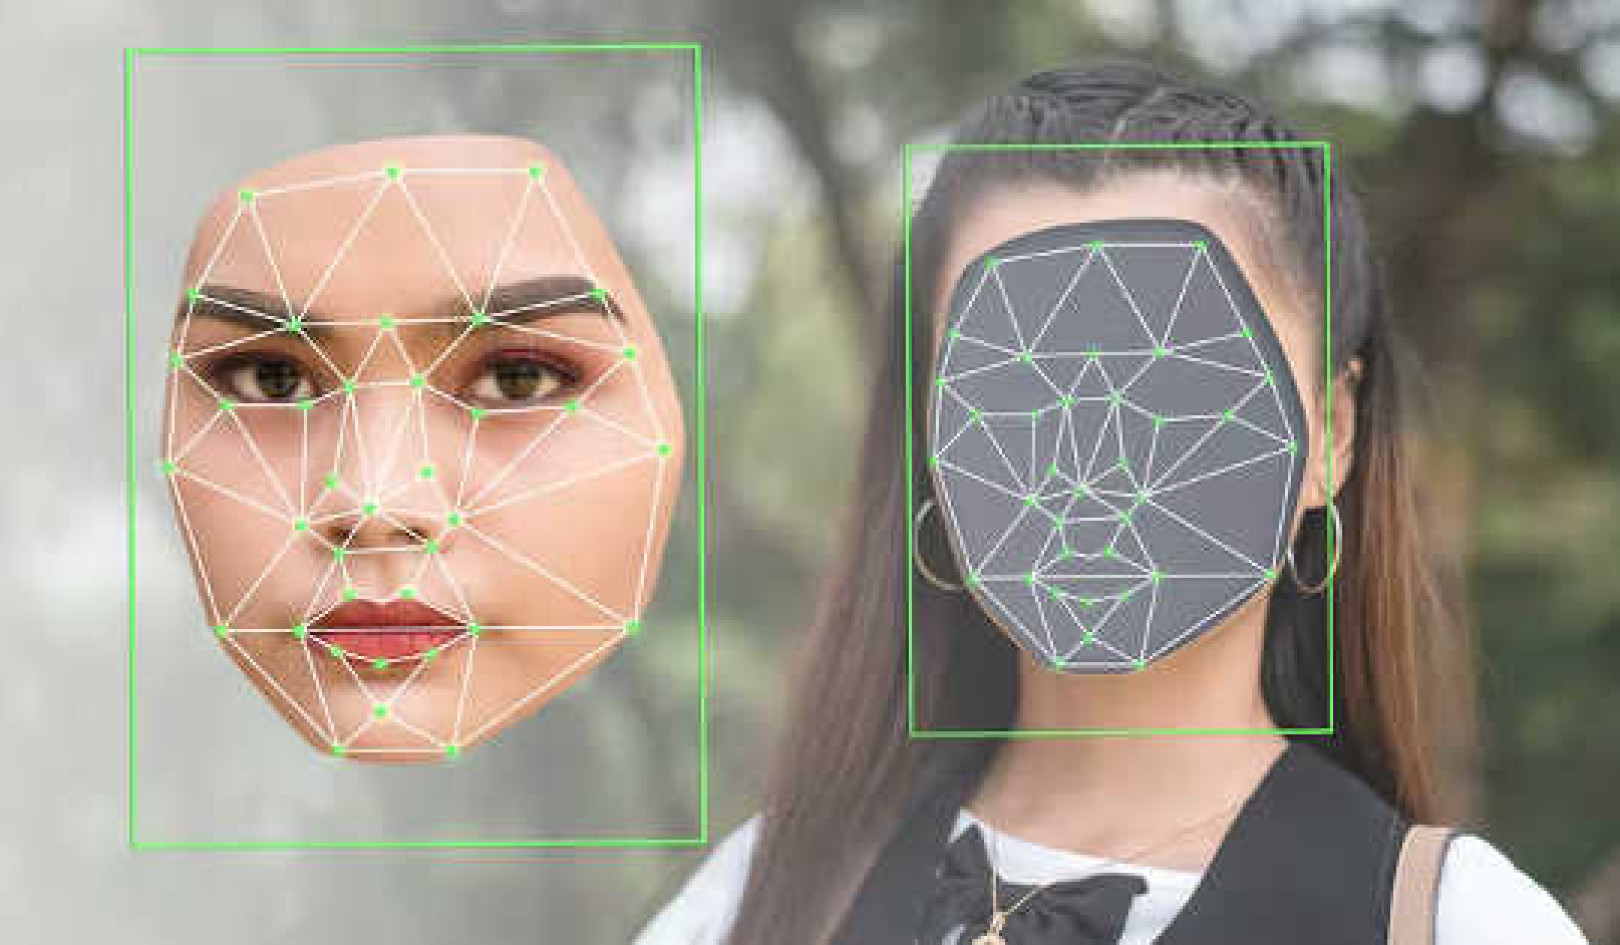 Η χρήση Deepfakes μπορεί να σπείρει αμφιβολίες, δημιουργώντας σύγχυση και δυσπιστία στους θεατές